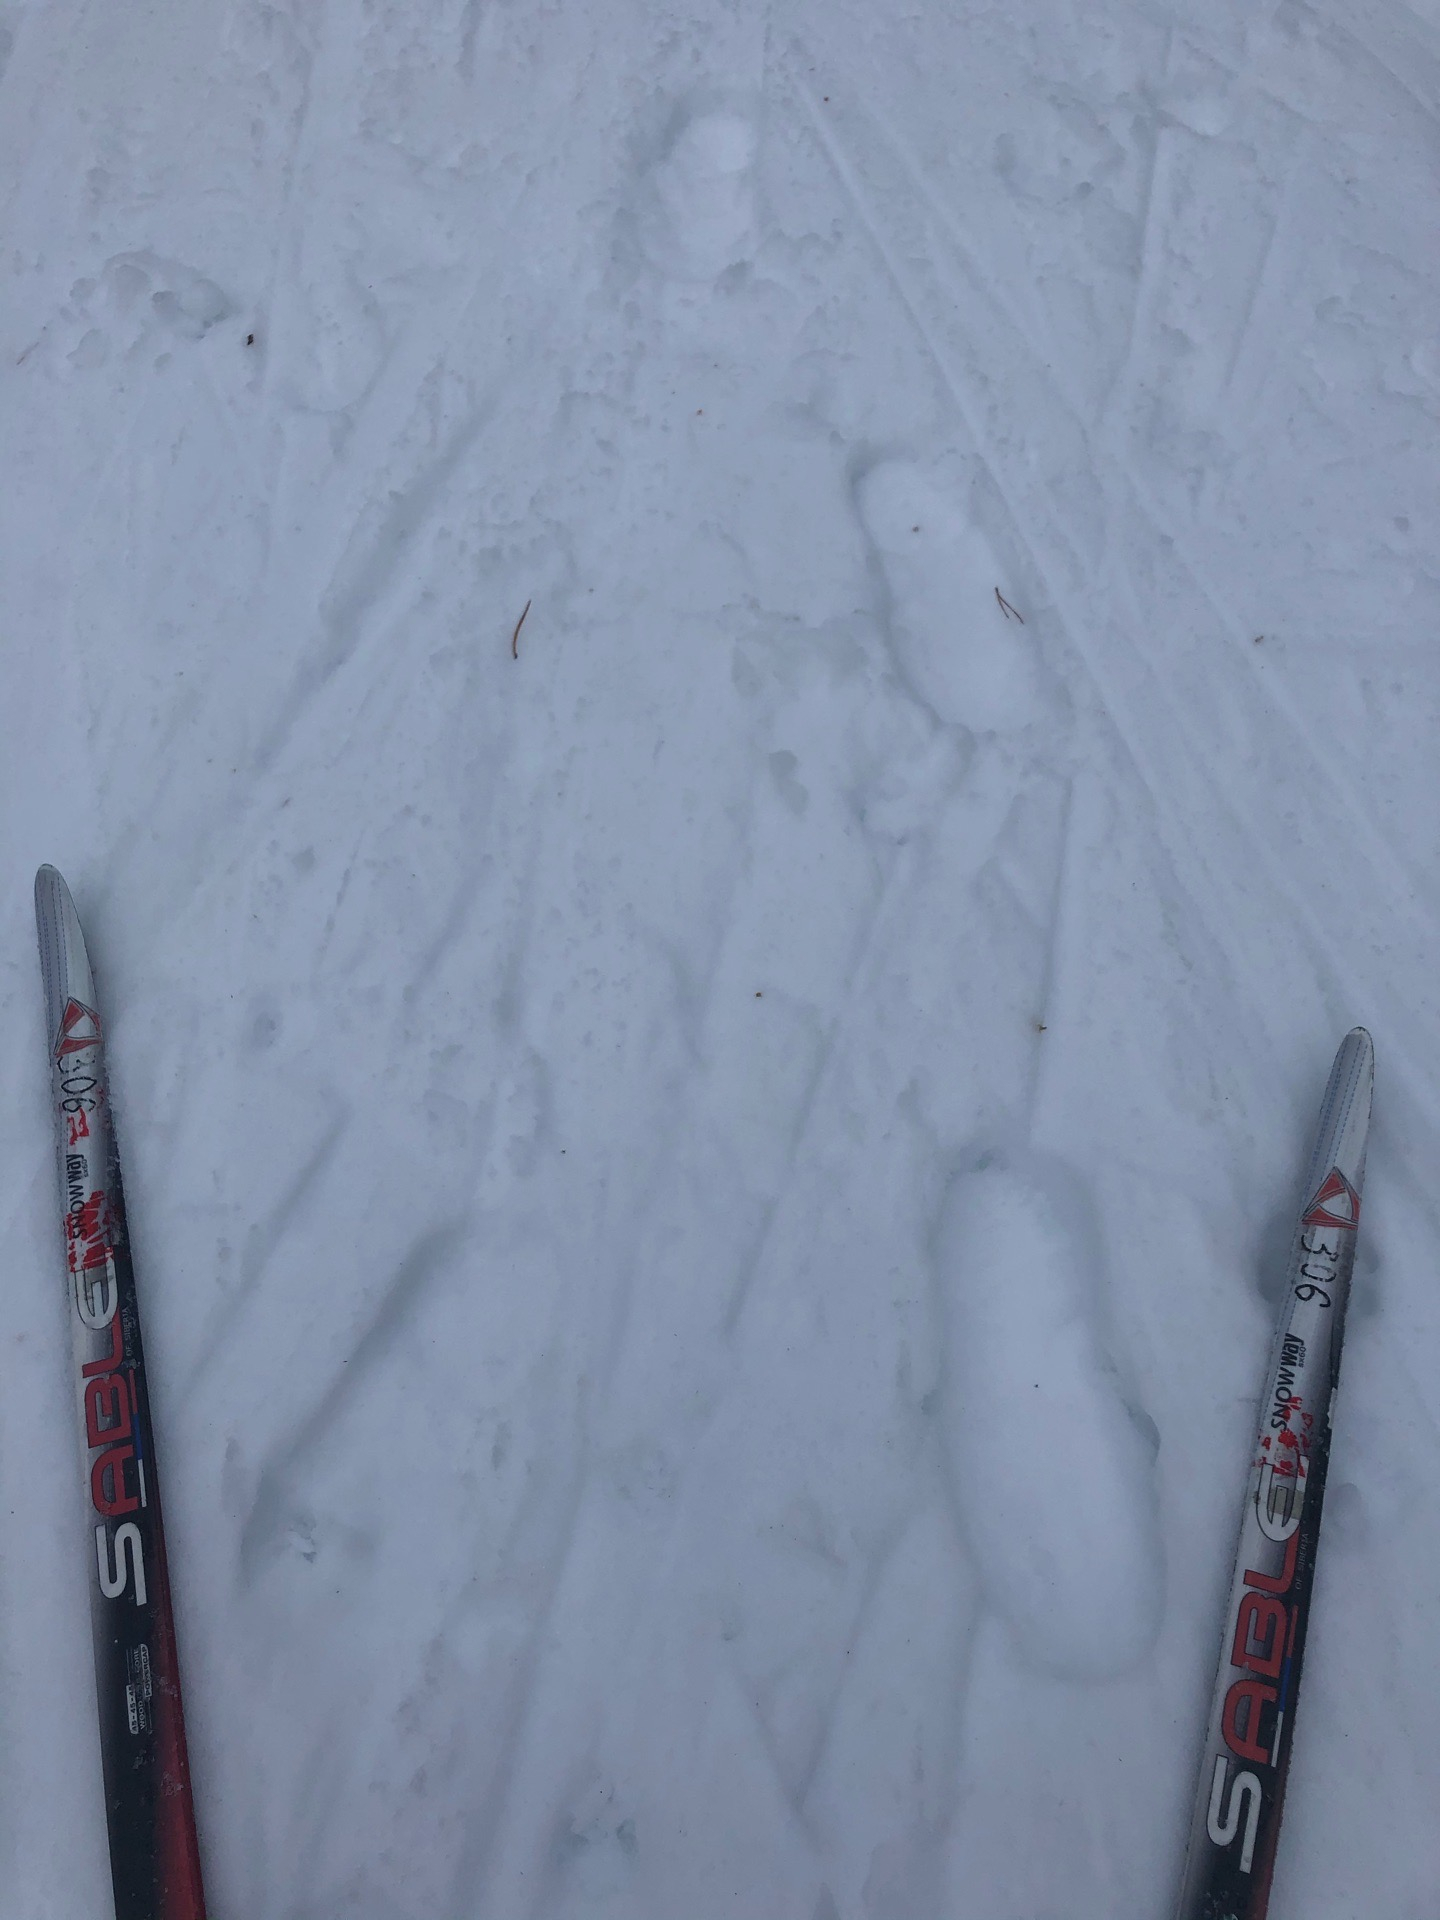 Накануне соревнований в ухтинском поселке испортили лыжню